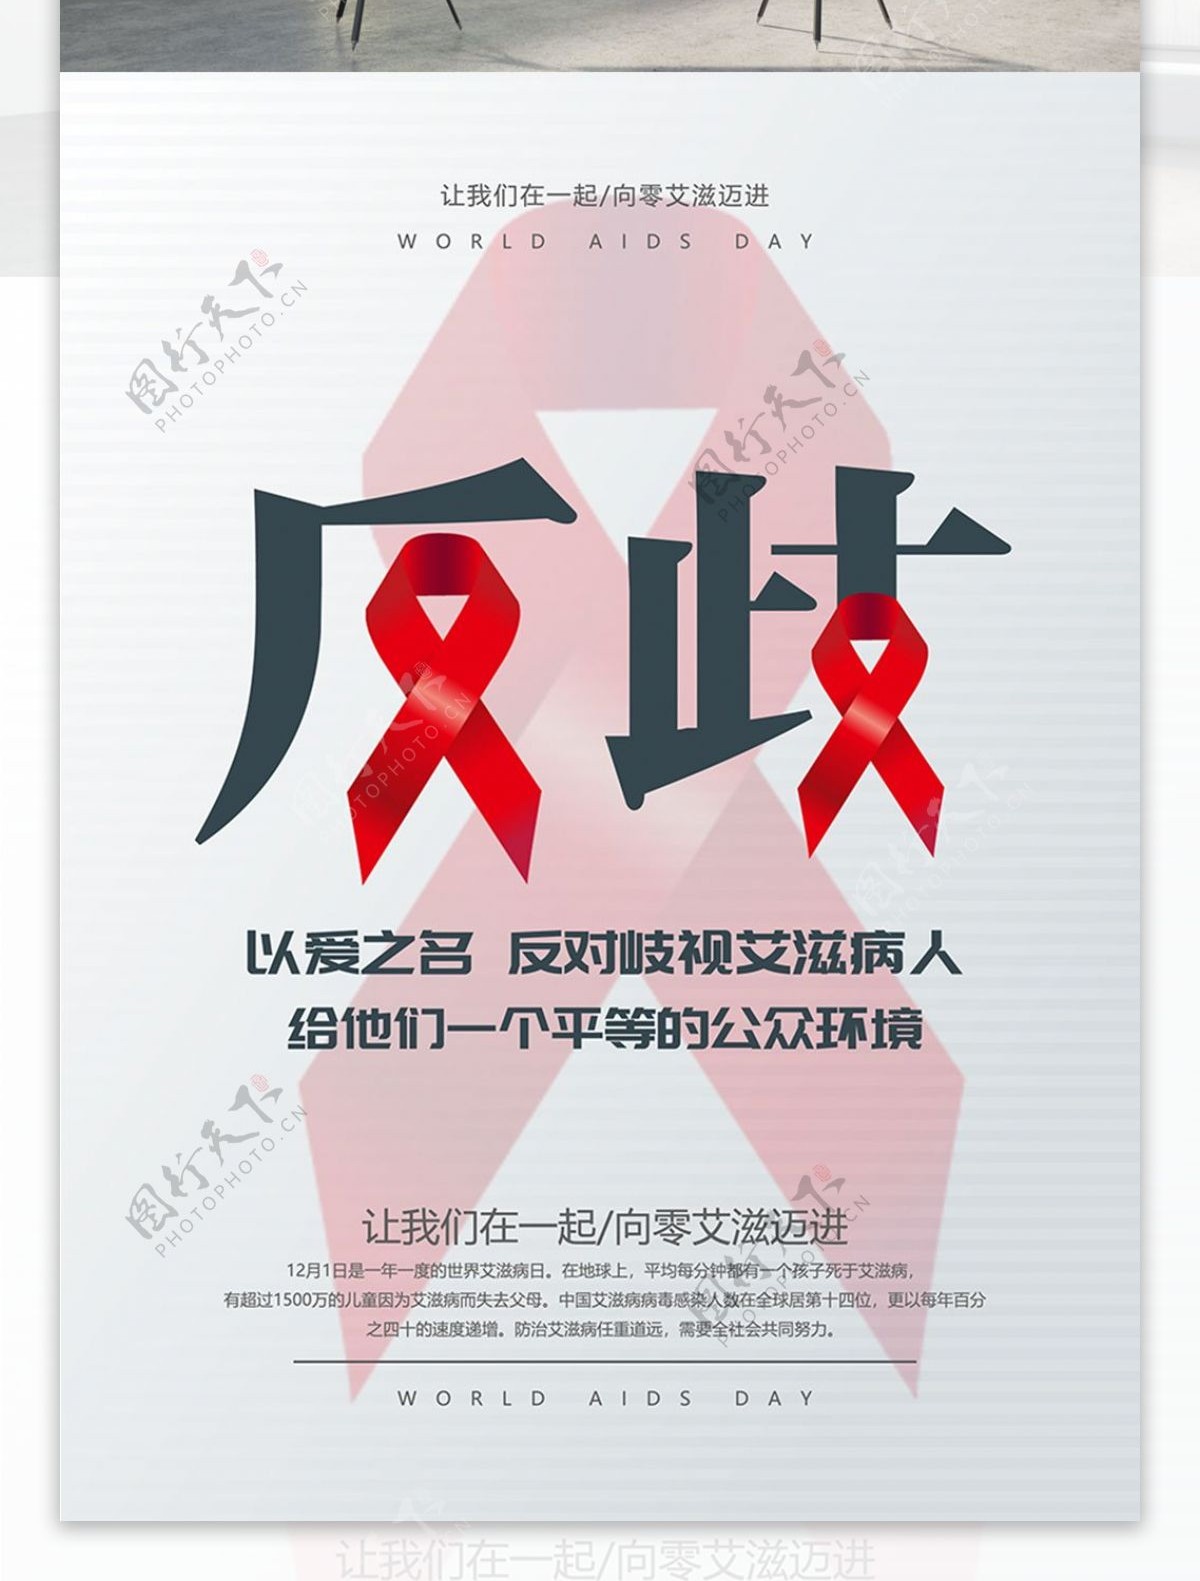 反歧视艾滋病人公益宣传海报psd源文件